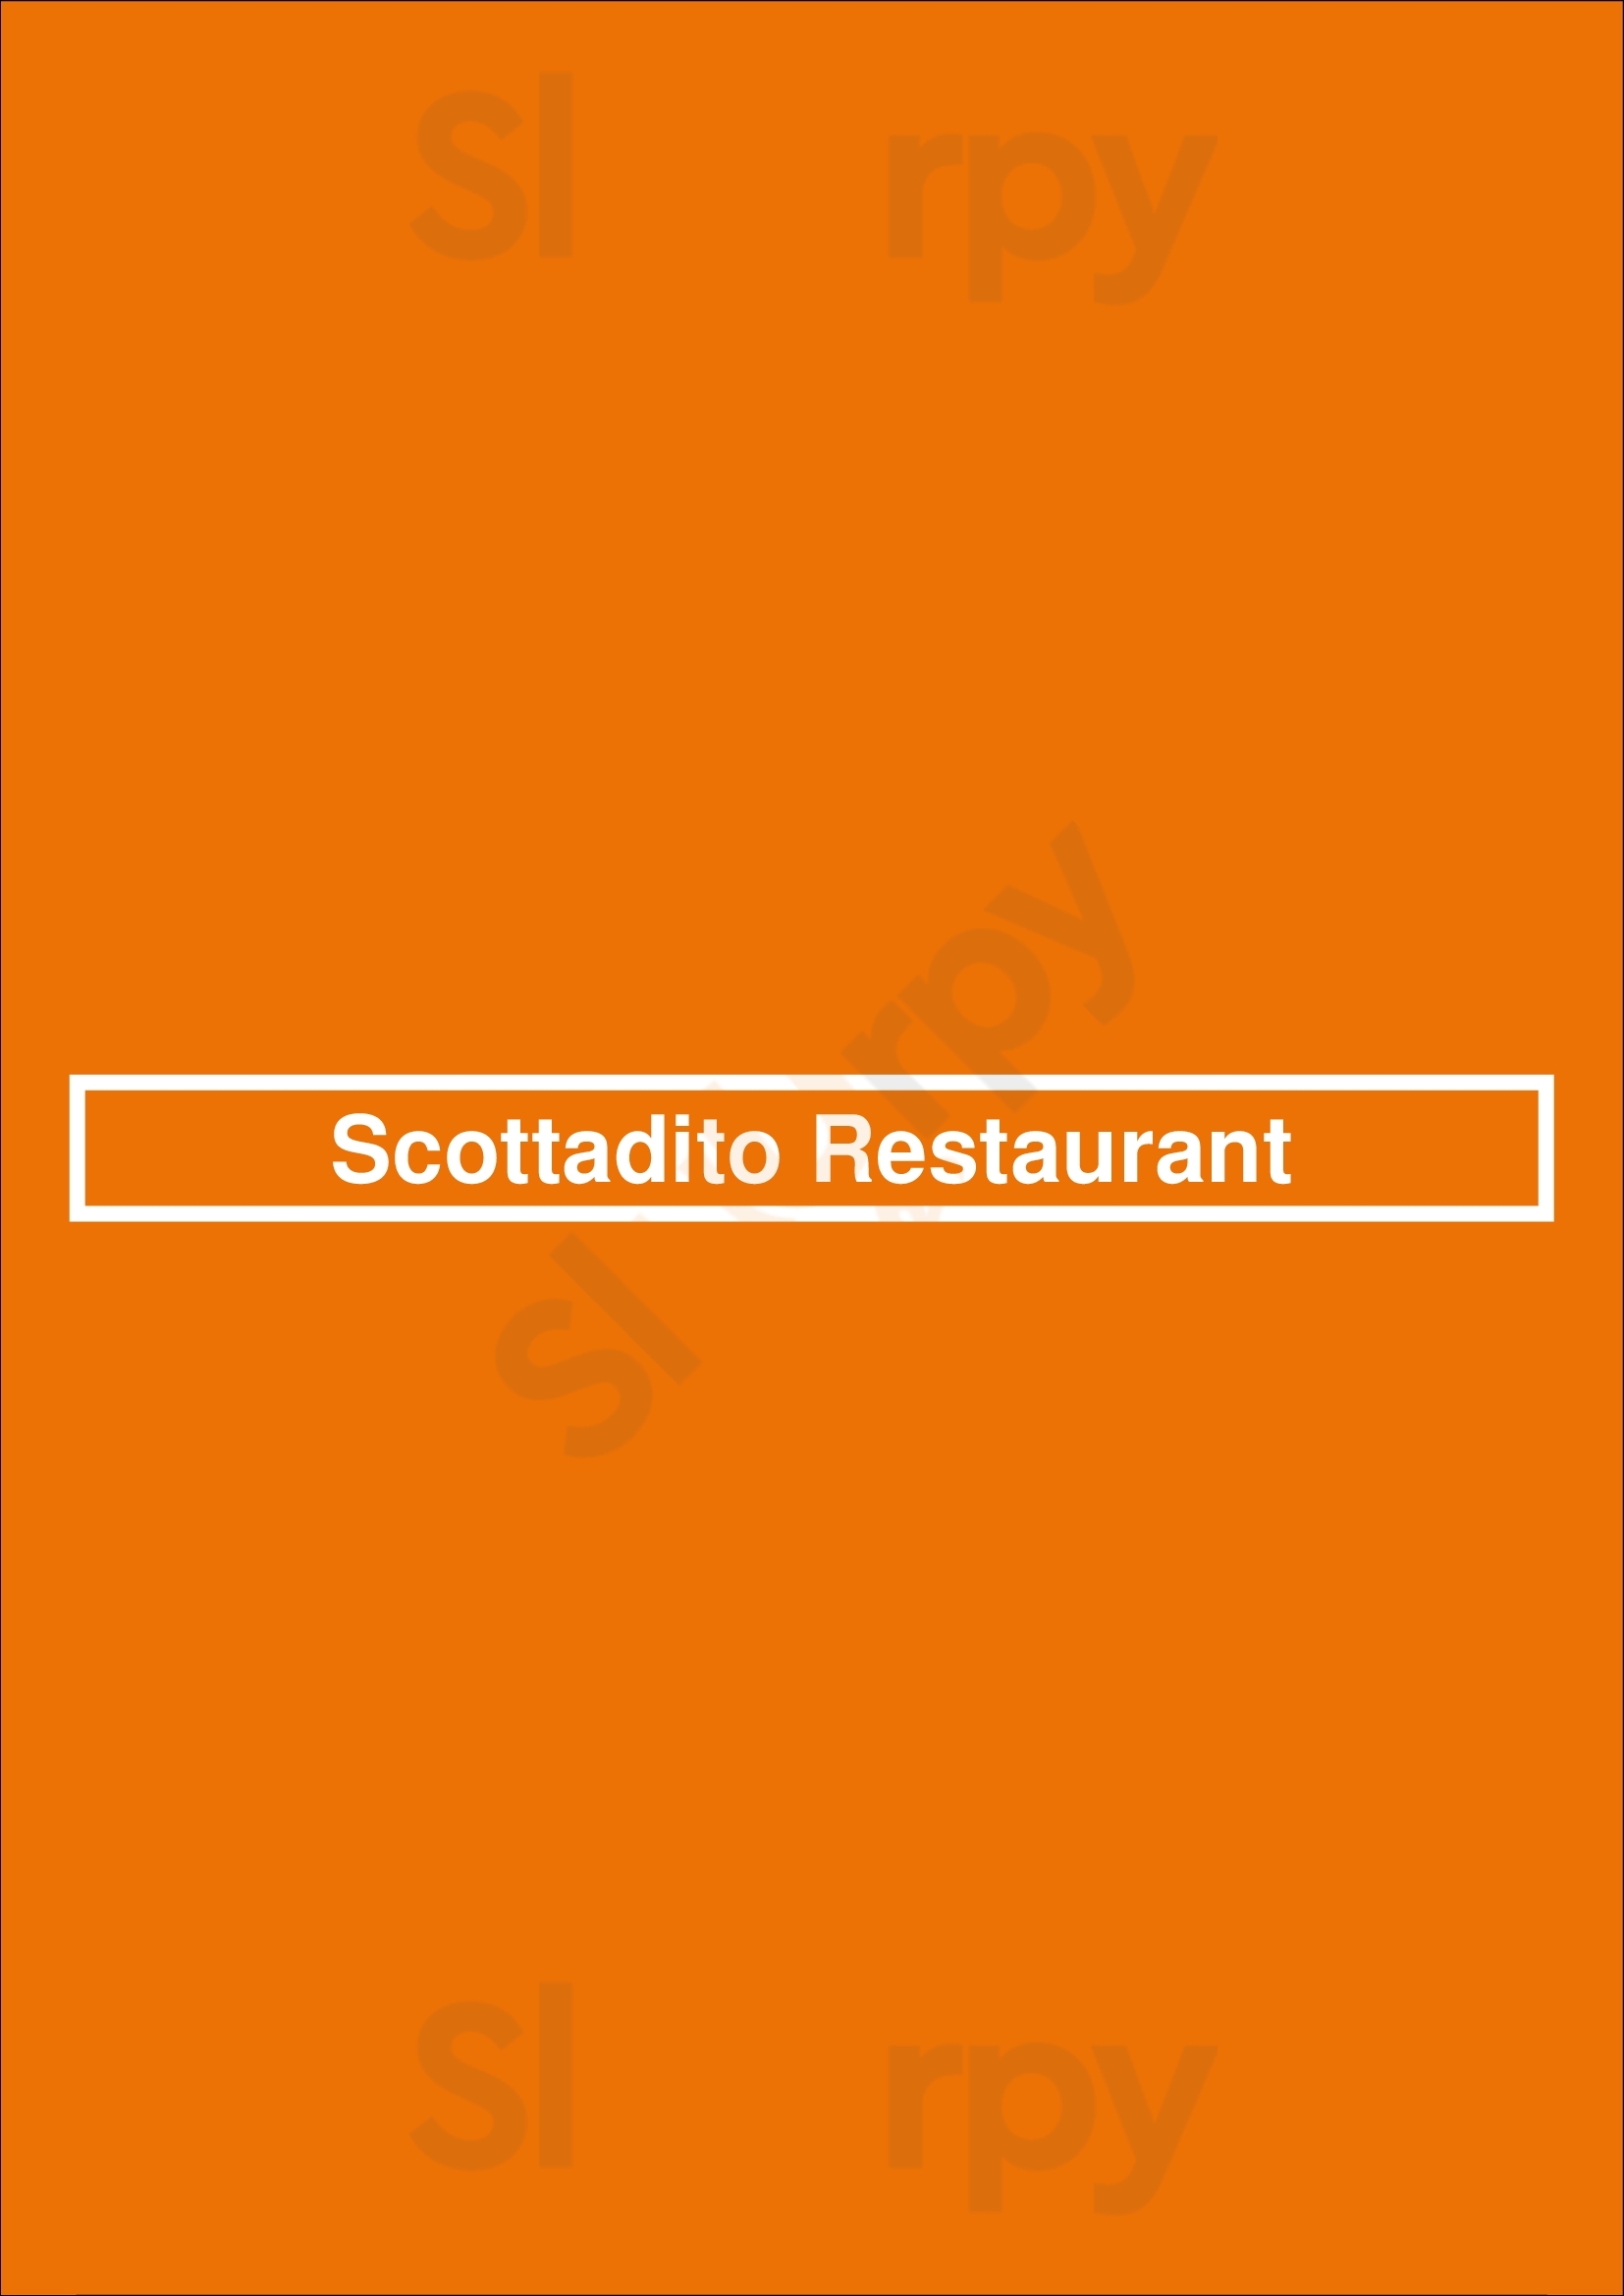 Scottadito Restaurant Amsterdam Menu - 1